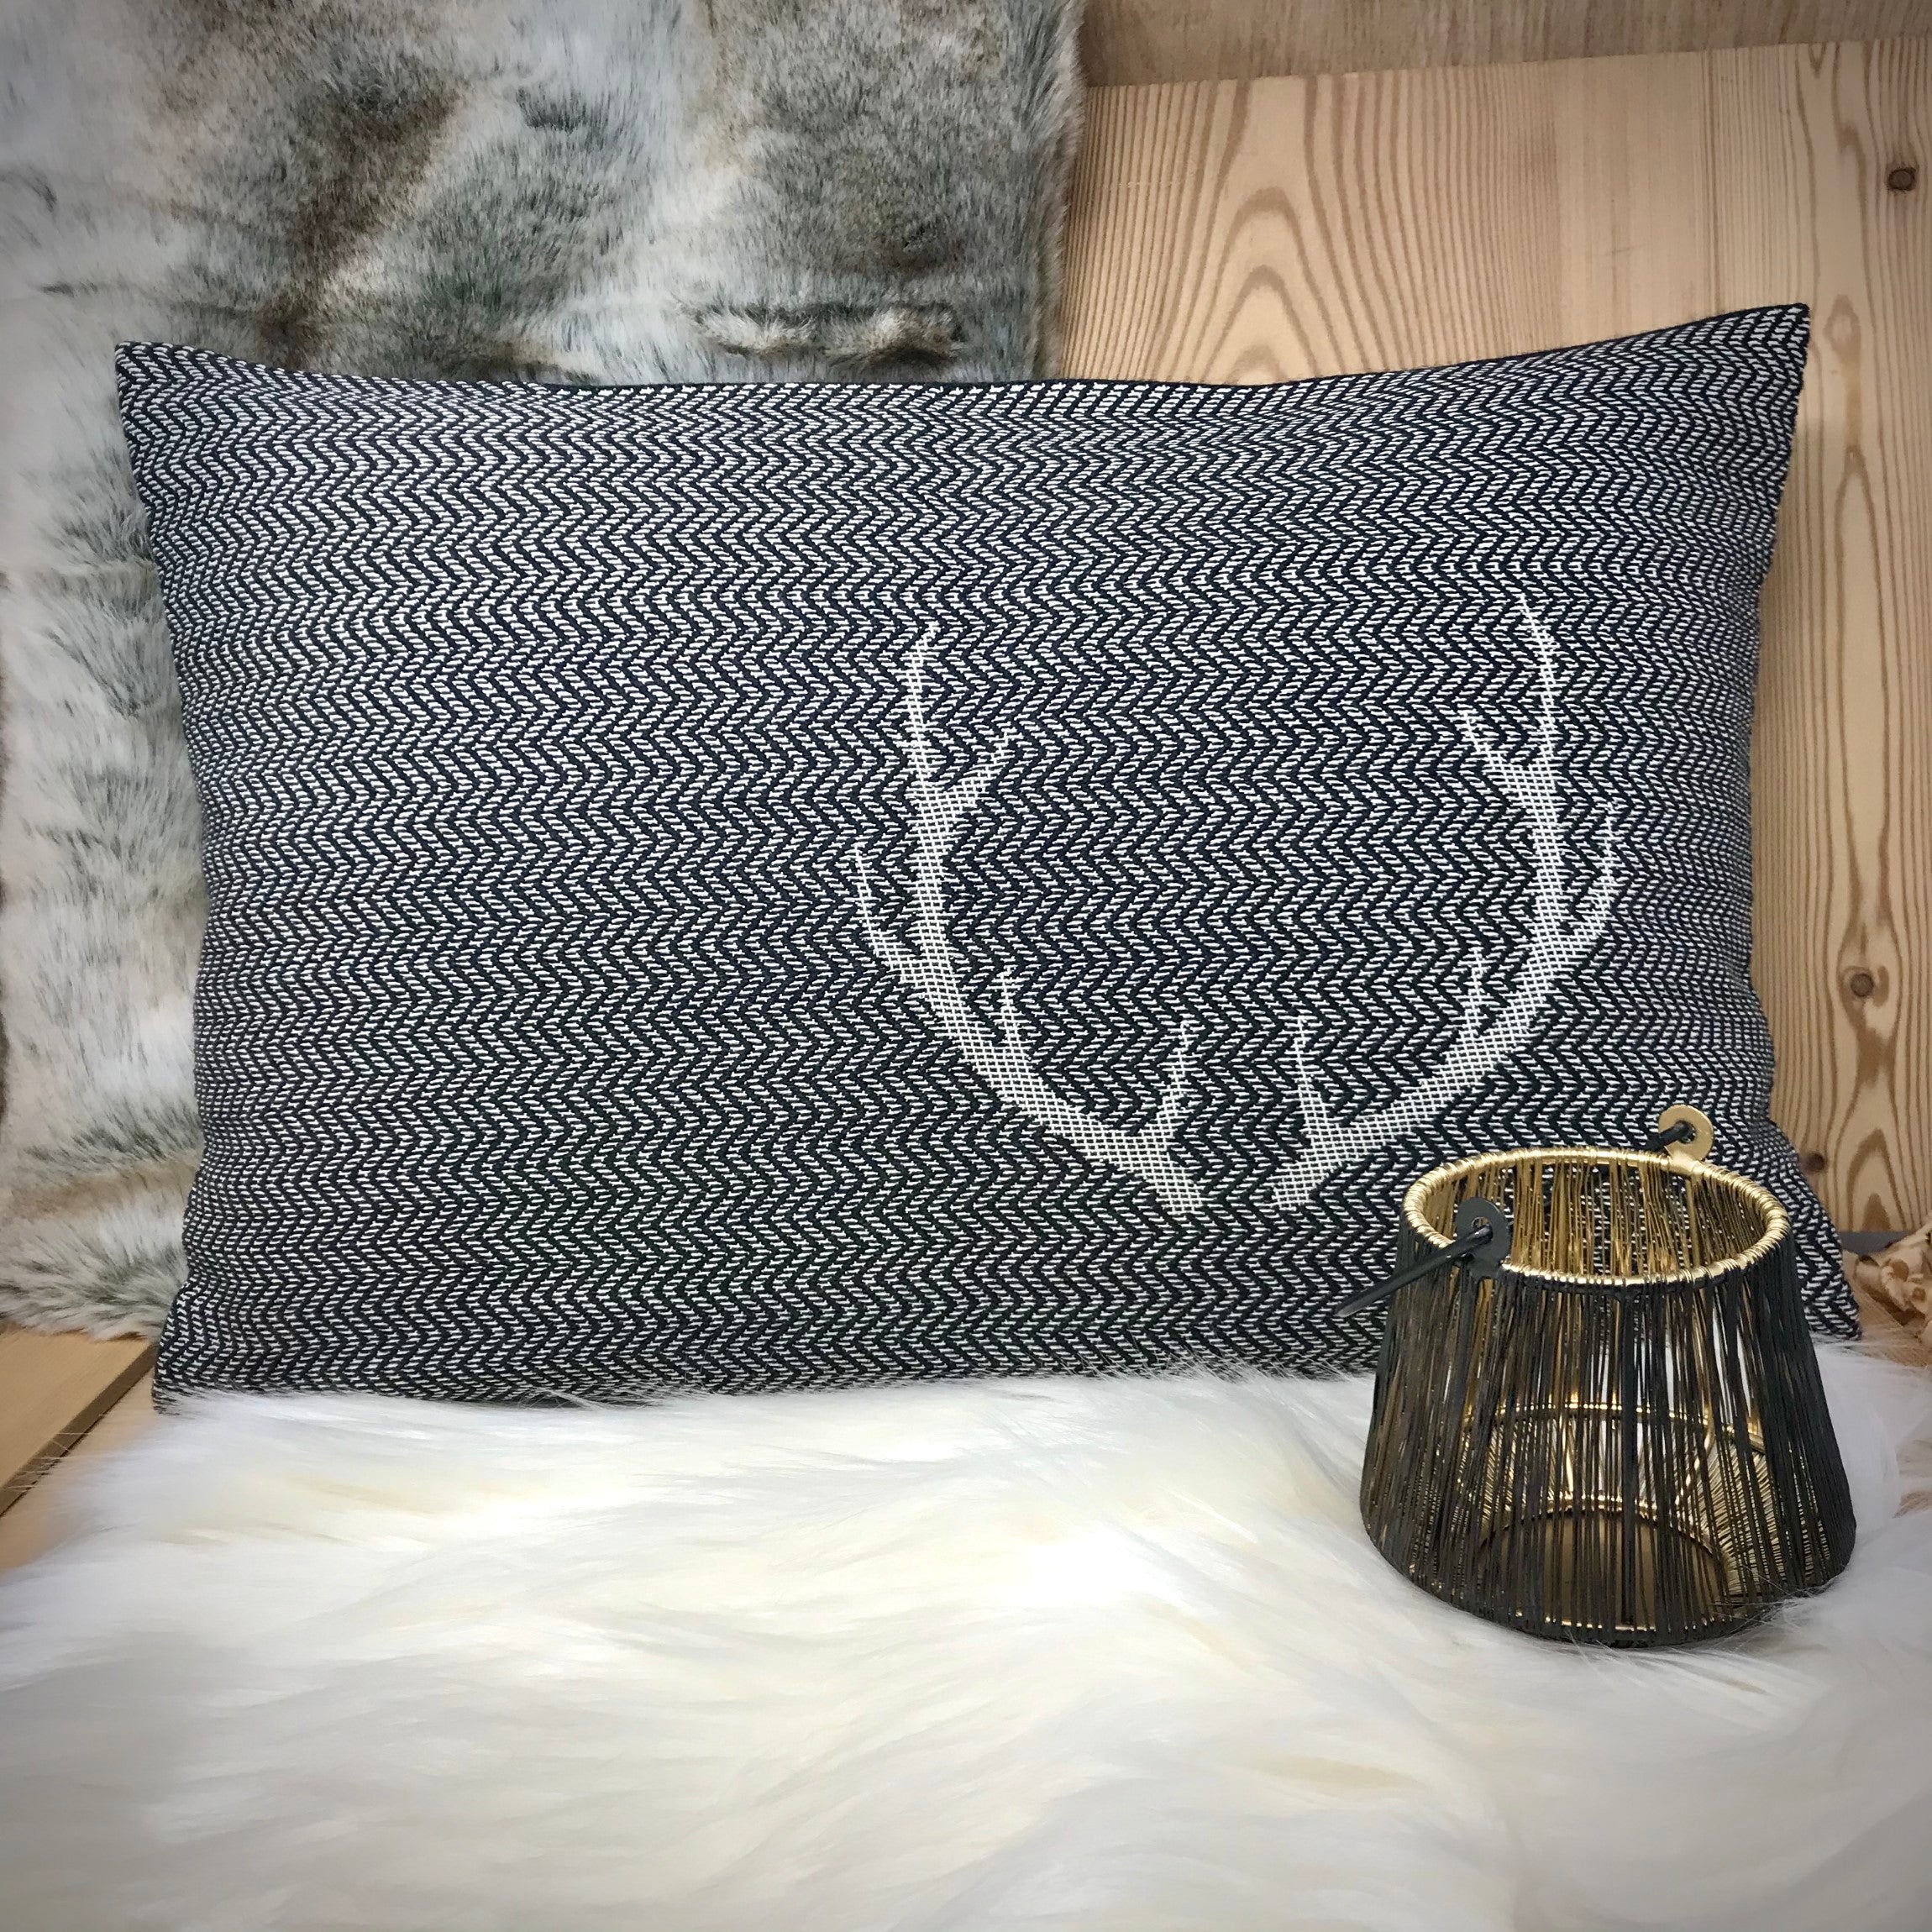 CORGN federa cuscino, corna di cervo, stile tirolese country montagna,  Lana Merino e cotone, 30 x 50 cm, colore nero